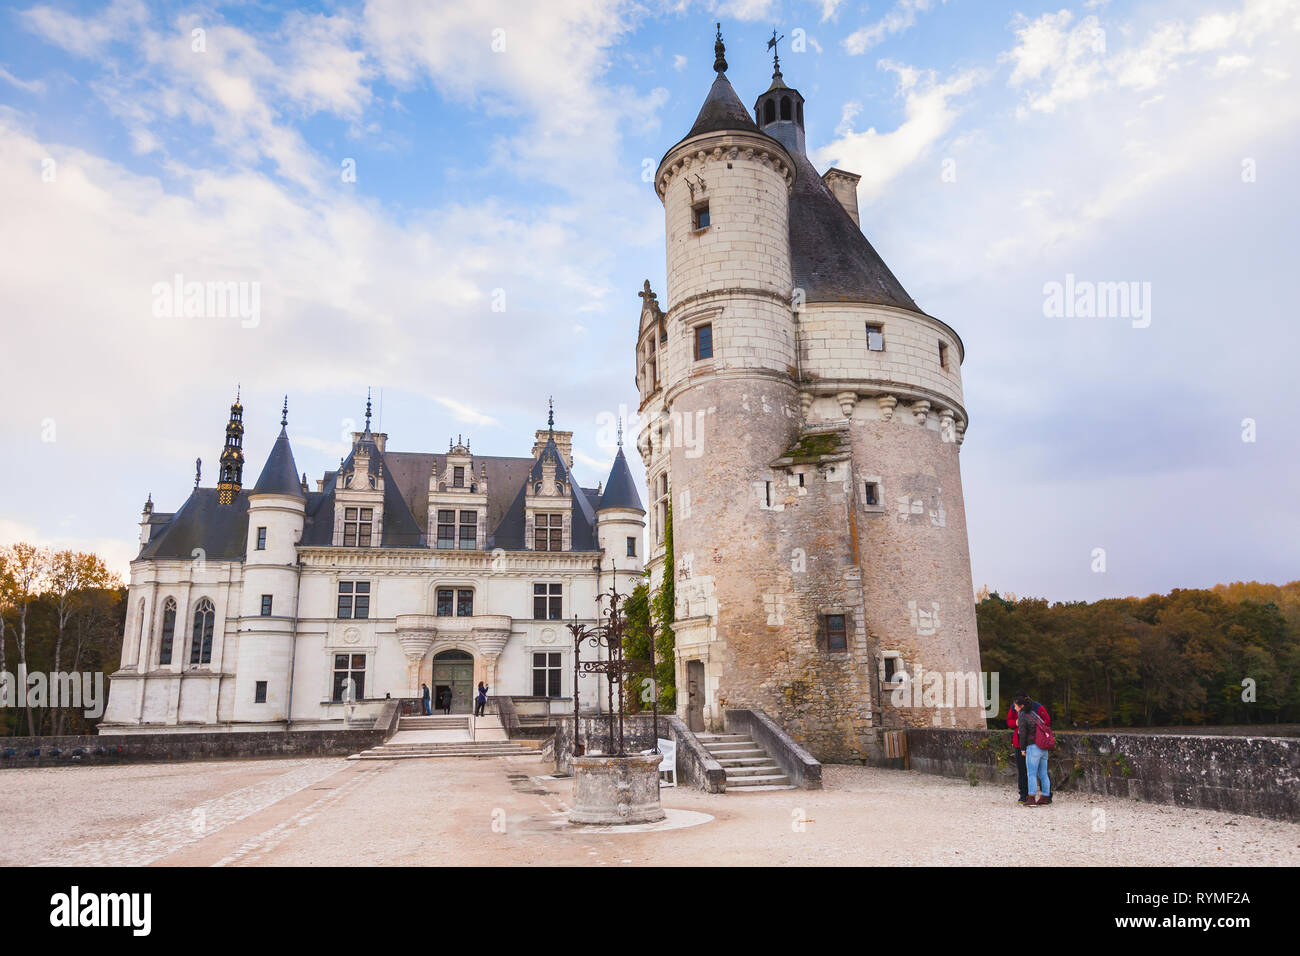 Chenonceau, Francia - 6 Novembre 2016: i turisti sono vicino al Chateau de Chenonceau, castello medievale nella Valle della Loira. Fu costruita nel XV secolo, mixtu Foto Stock